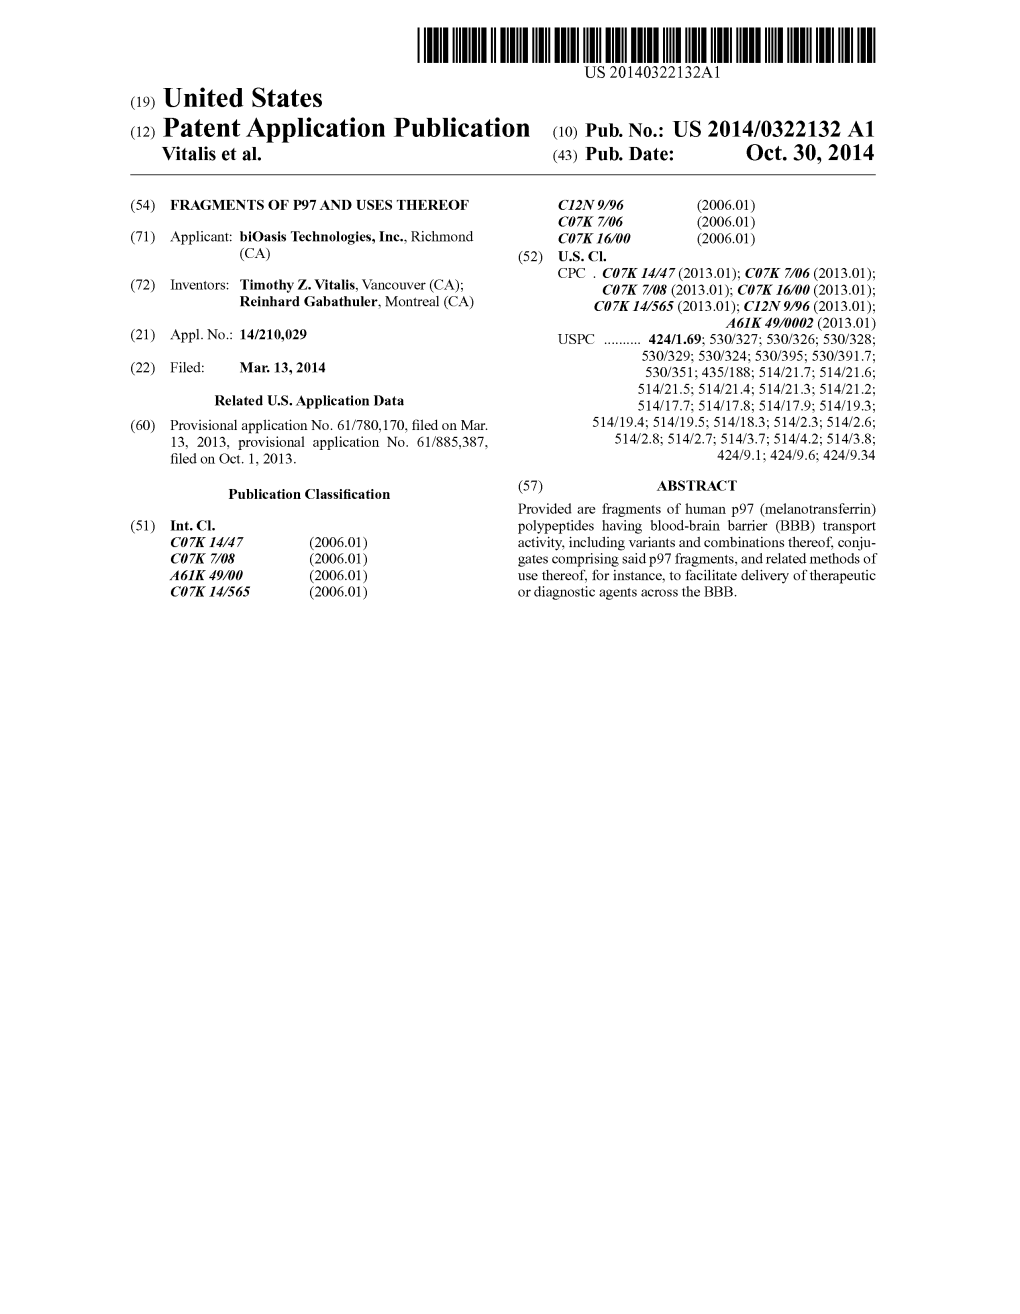 (12) Patent Application Publication (10) Pub. No.: US 2014/0322132 A1 Vitalis Et Al